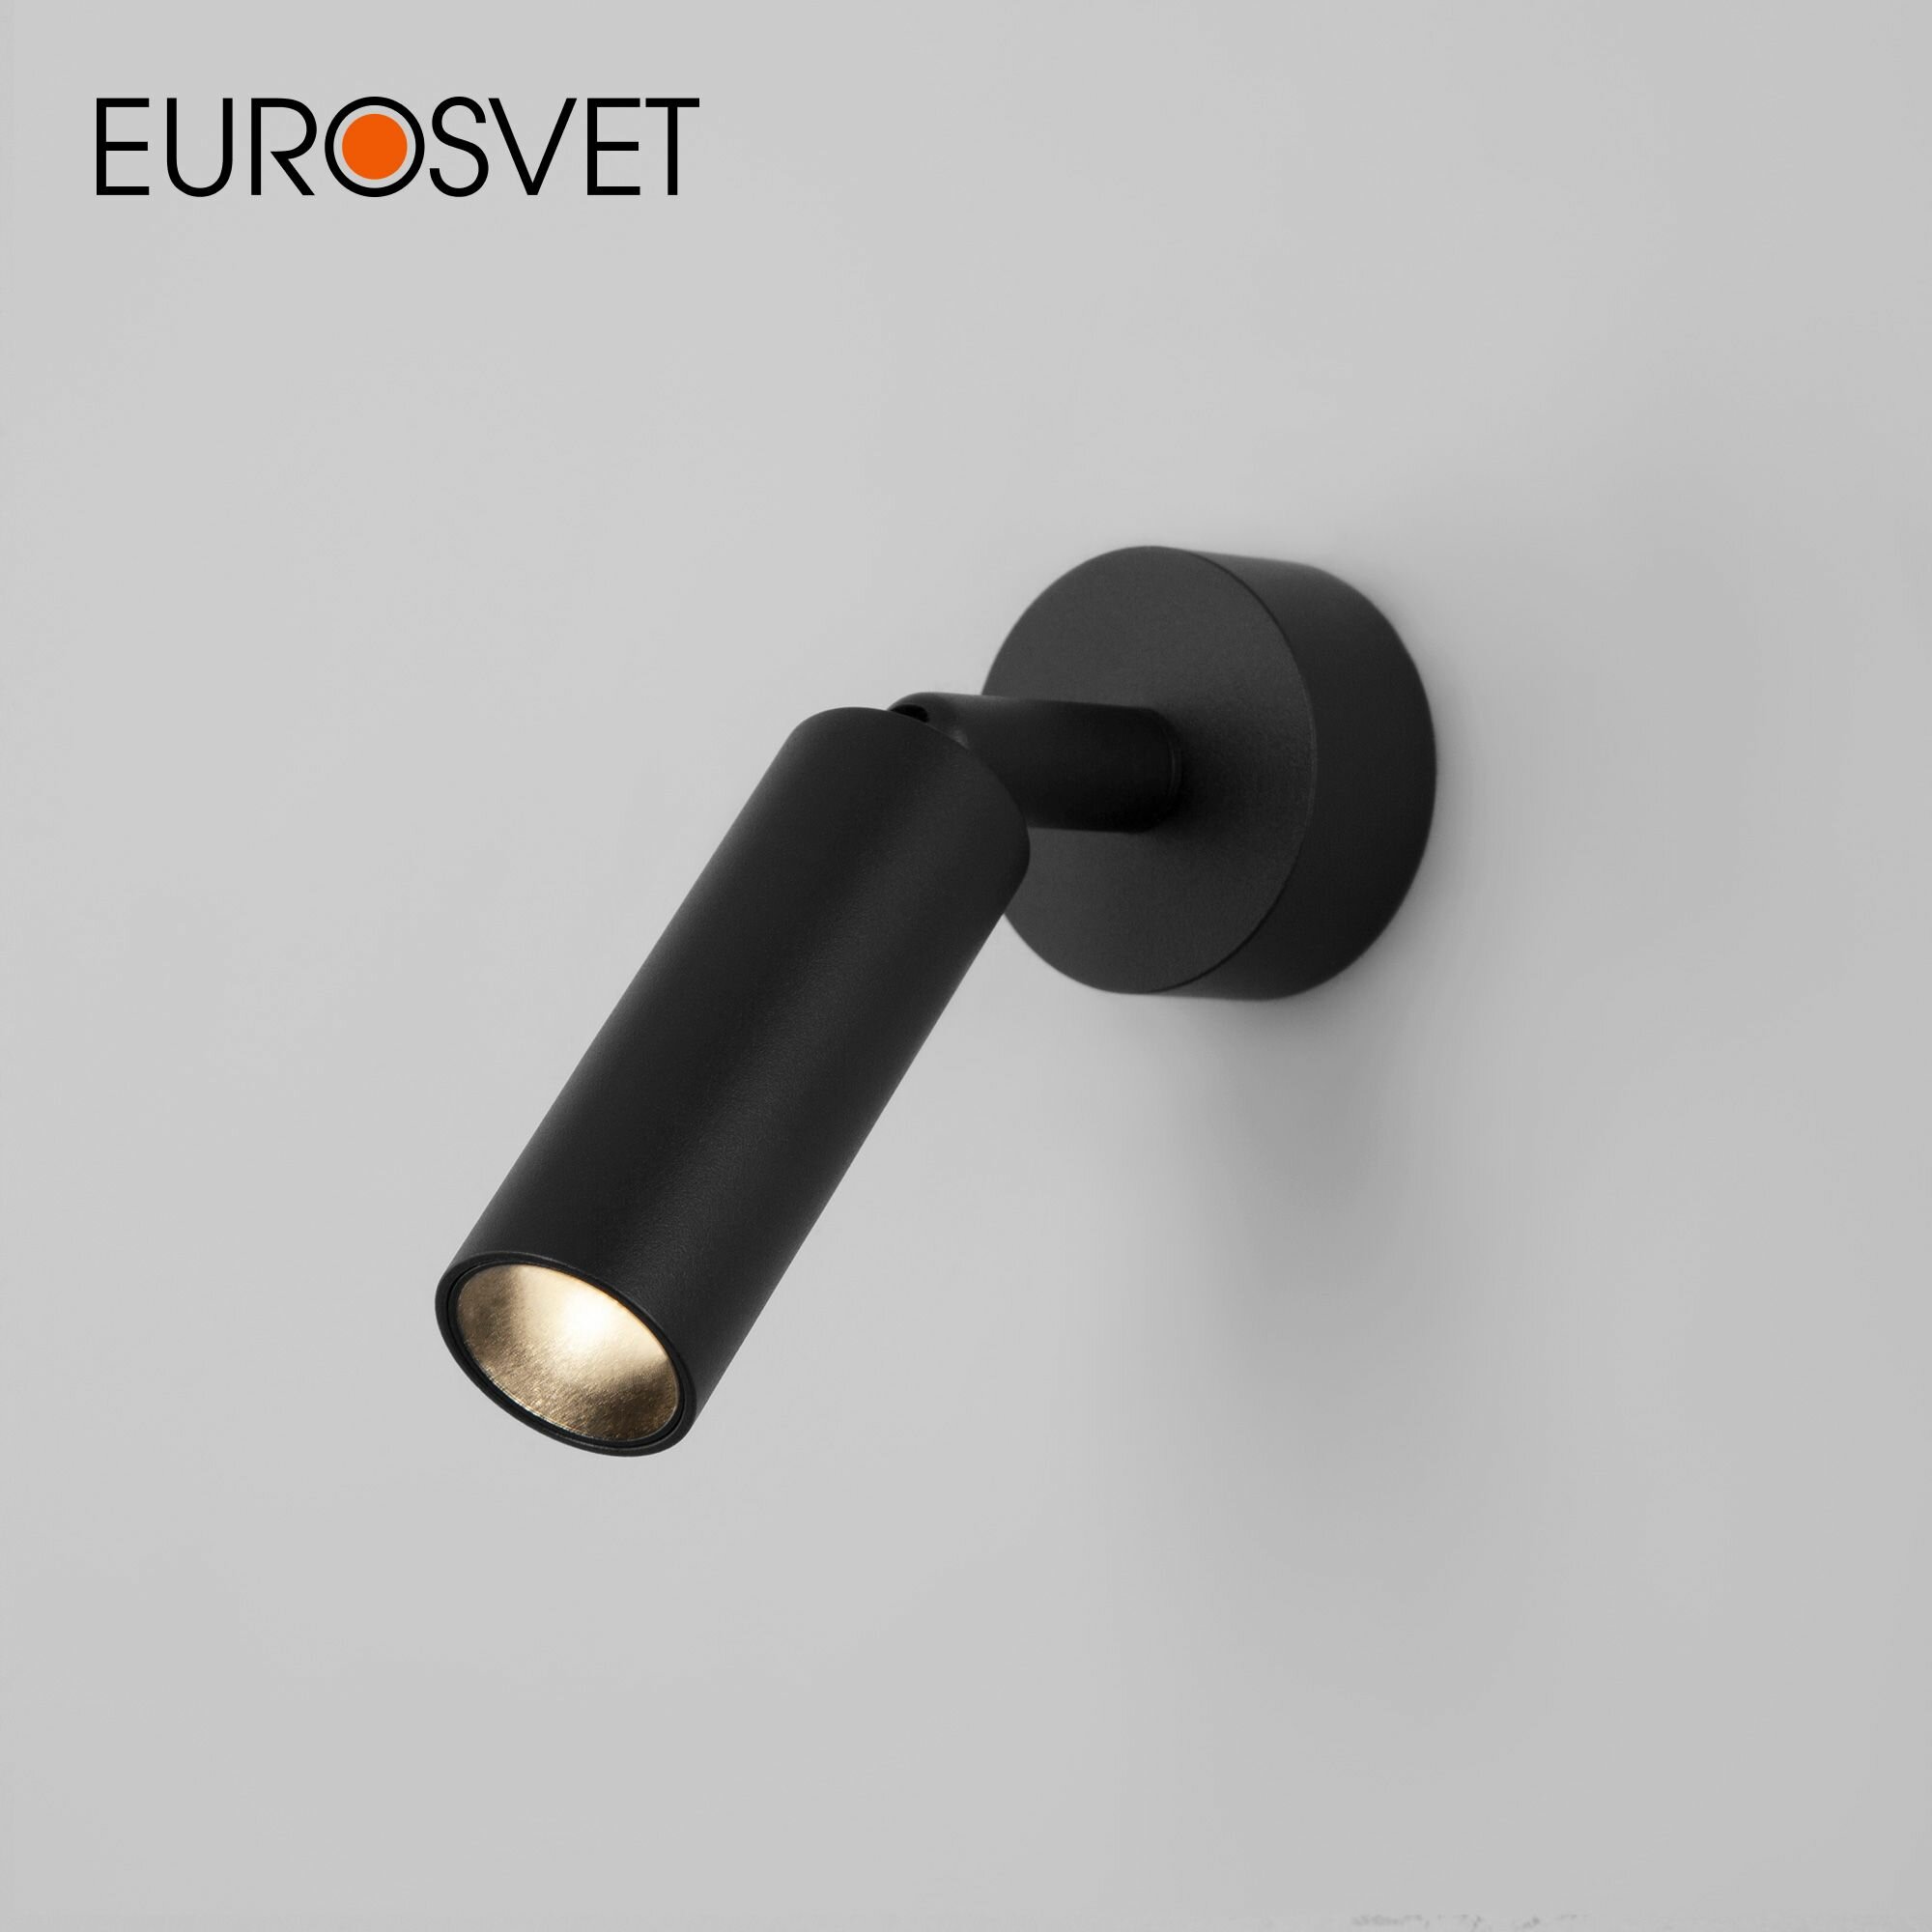 Спот / Накладной светодиодный светильник с поворотным плафоном Eurosvet Pin 20133/1 LED, 3 Вт, 4200 К, цвет черный